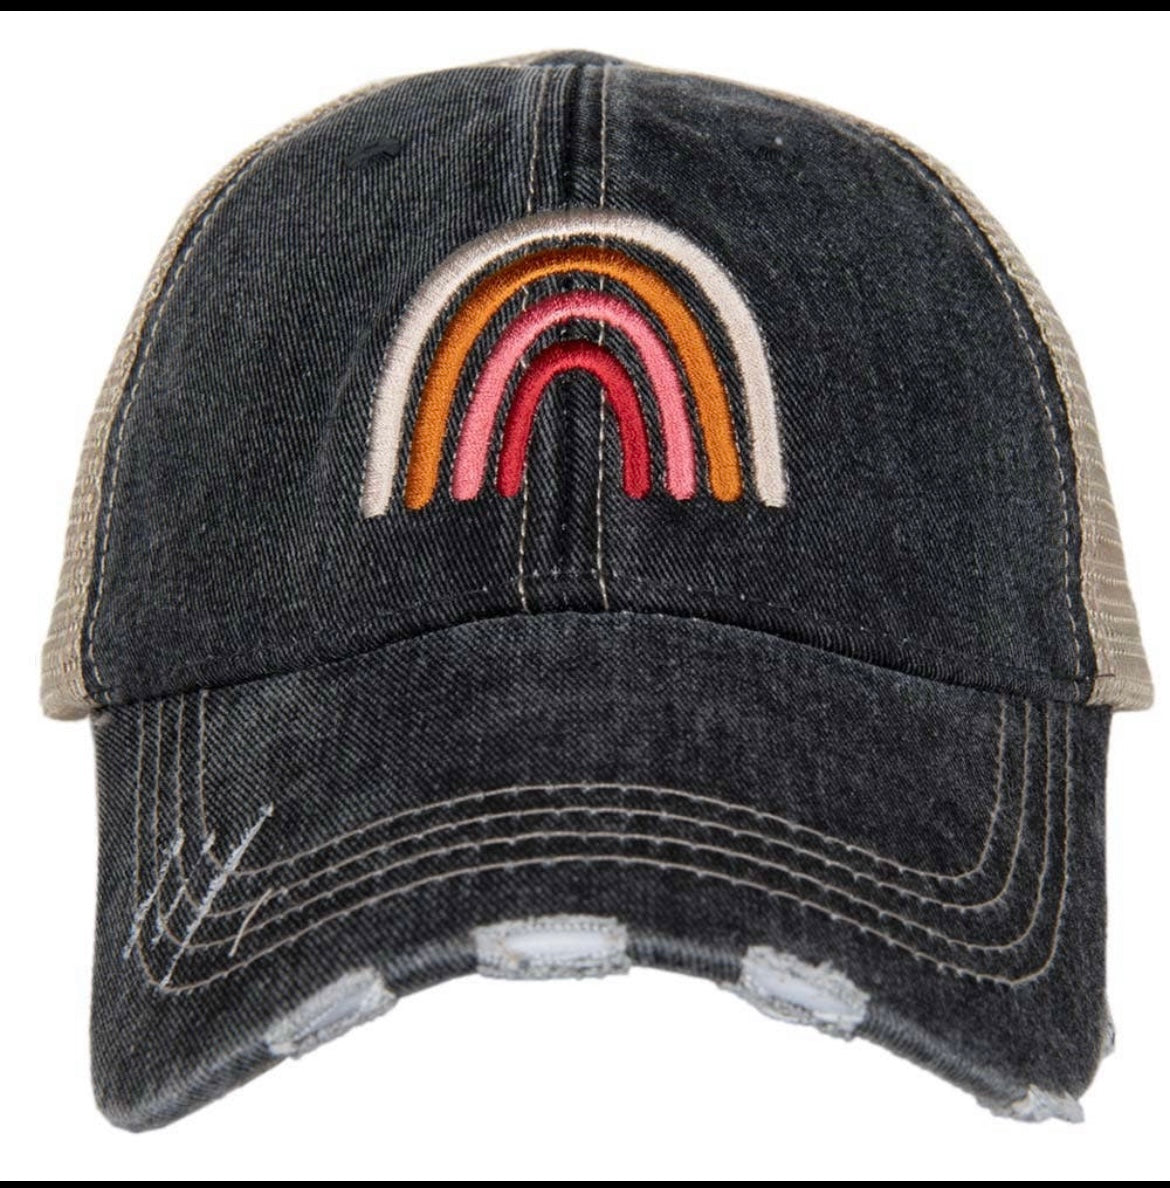 Trucker hat/caps